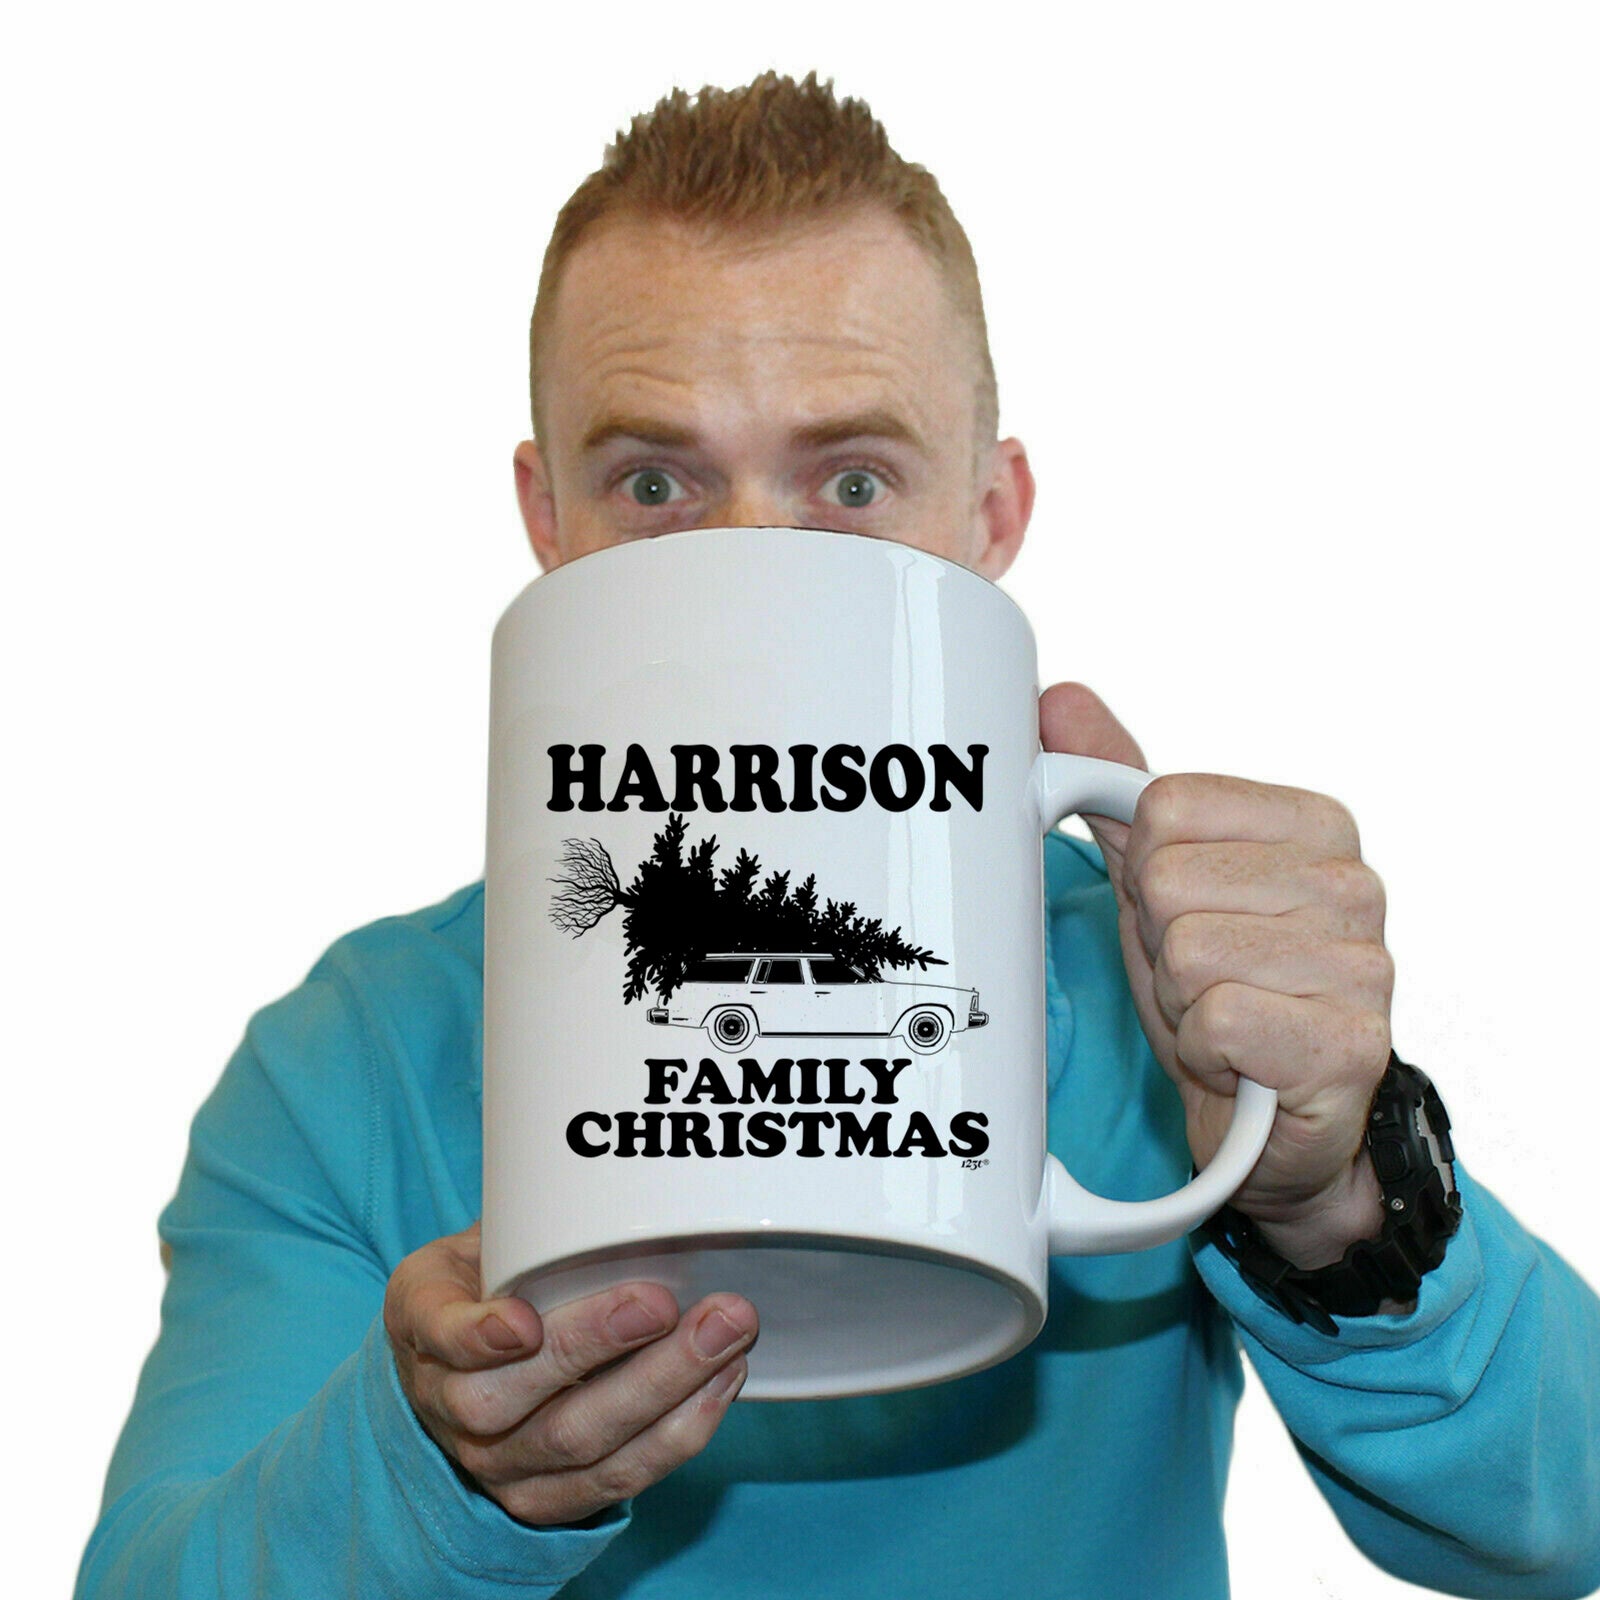 The Christmas Hub - Family Christmas Harrison - Funny Giant 2 Litre Mug